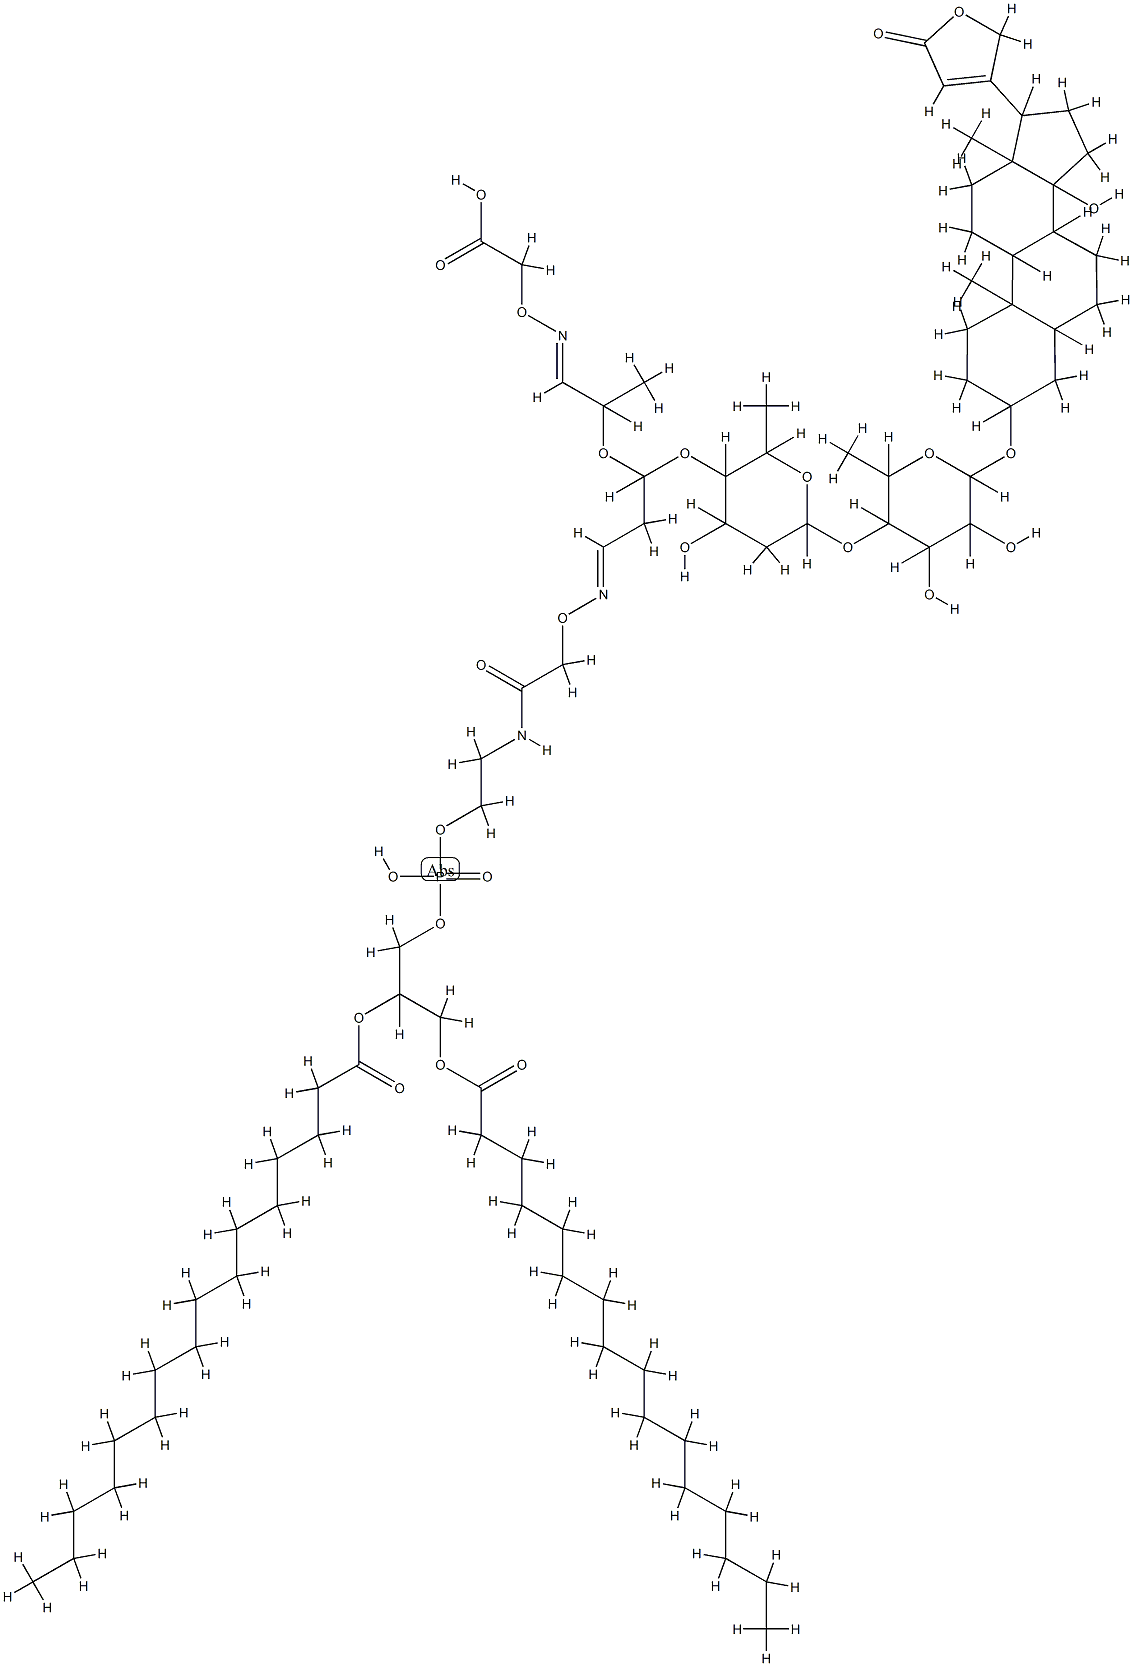 digoxin-phosphatidylethanolamine conjugate